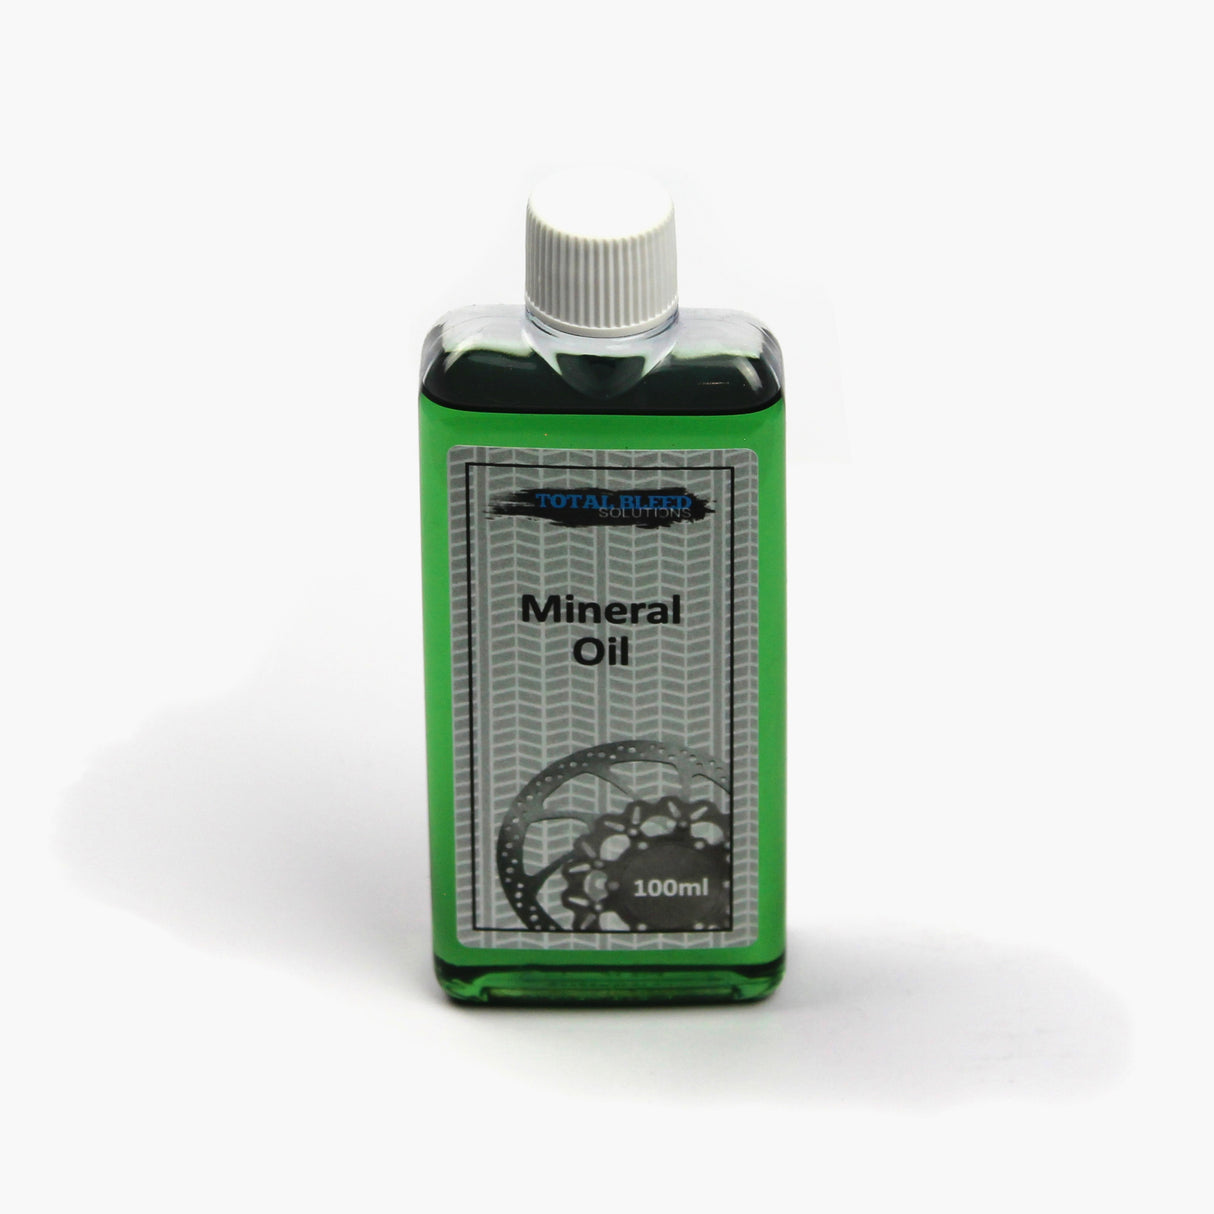 Mineralöl-Bremsflüssigkeit für SRAM-Bremsen (100 ml)